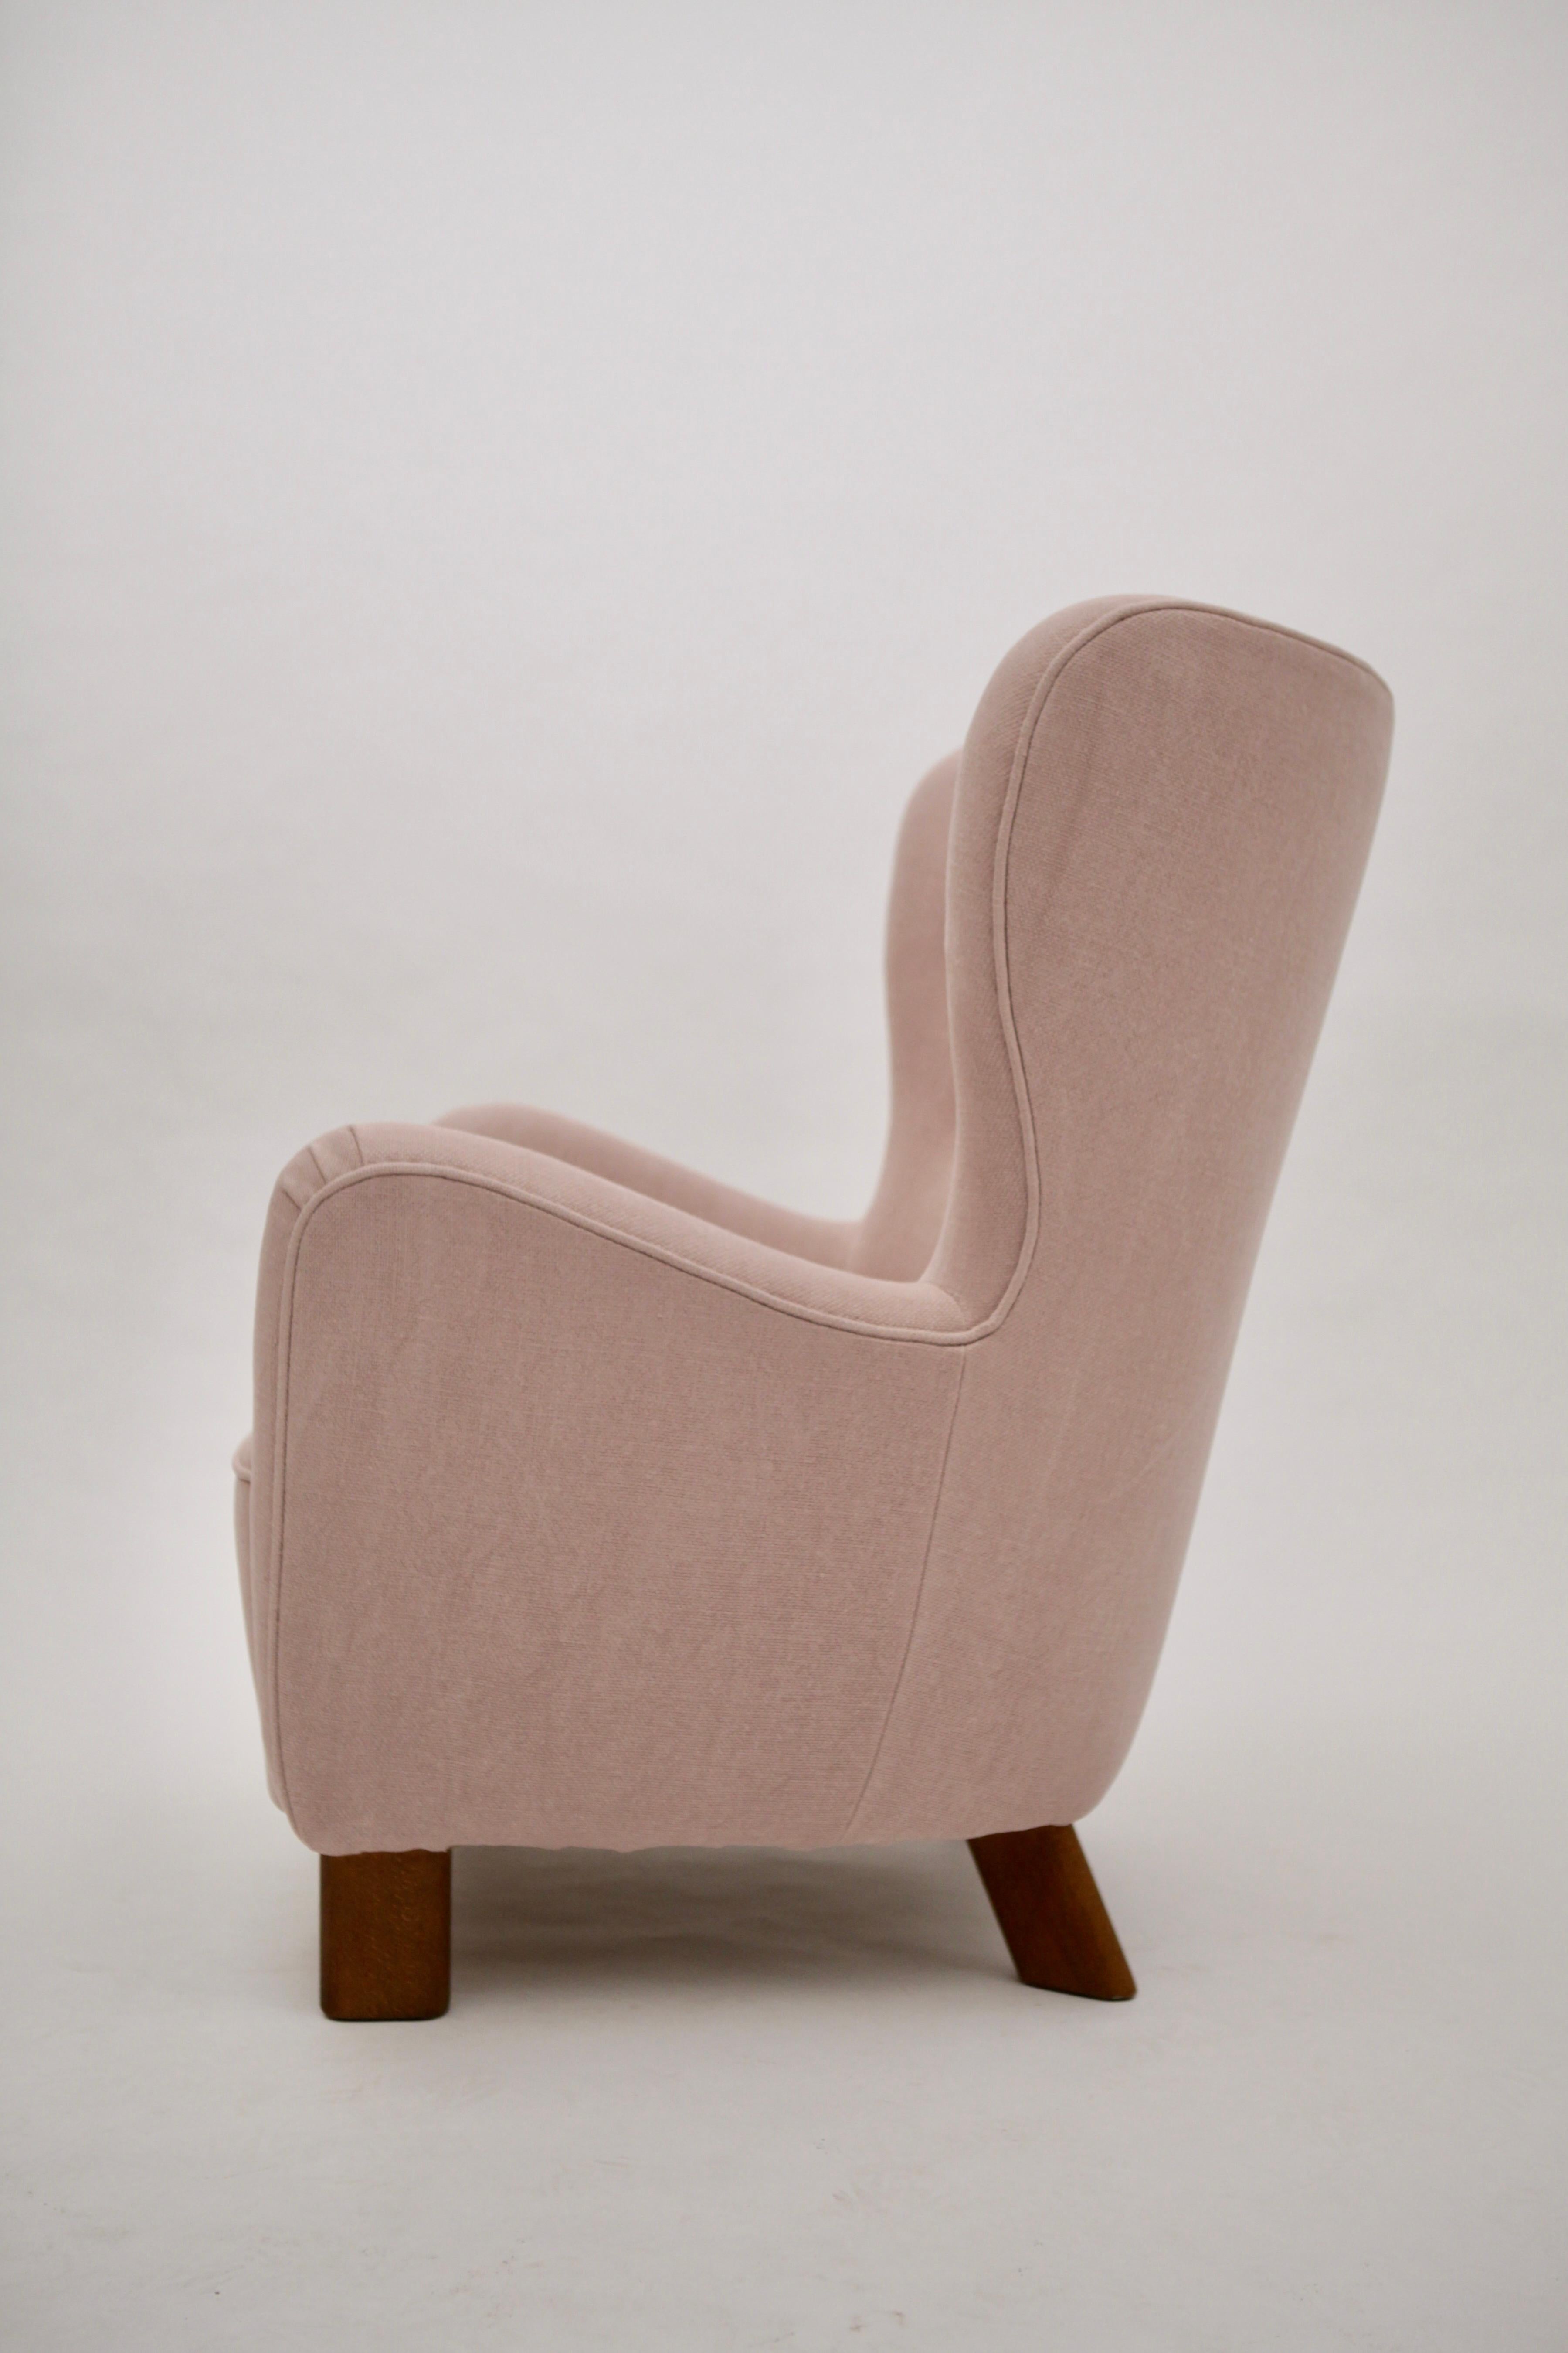 Danish Fritz Hansen High Back Lounge Chair, Model 1669, Denmark, 1940s For Sale